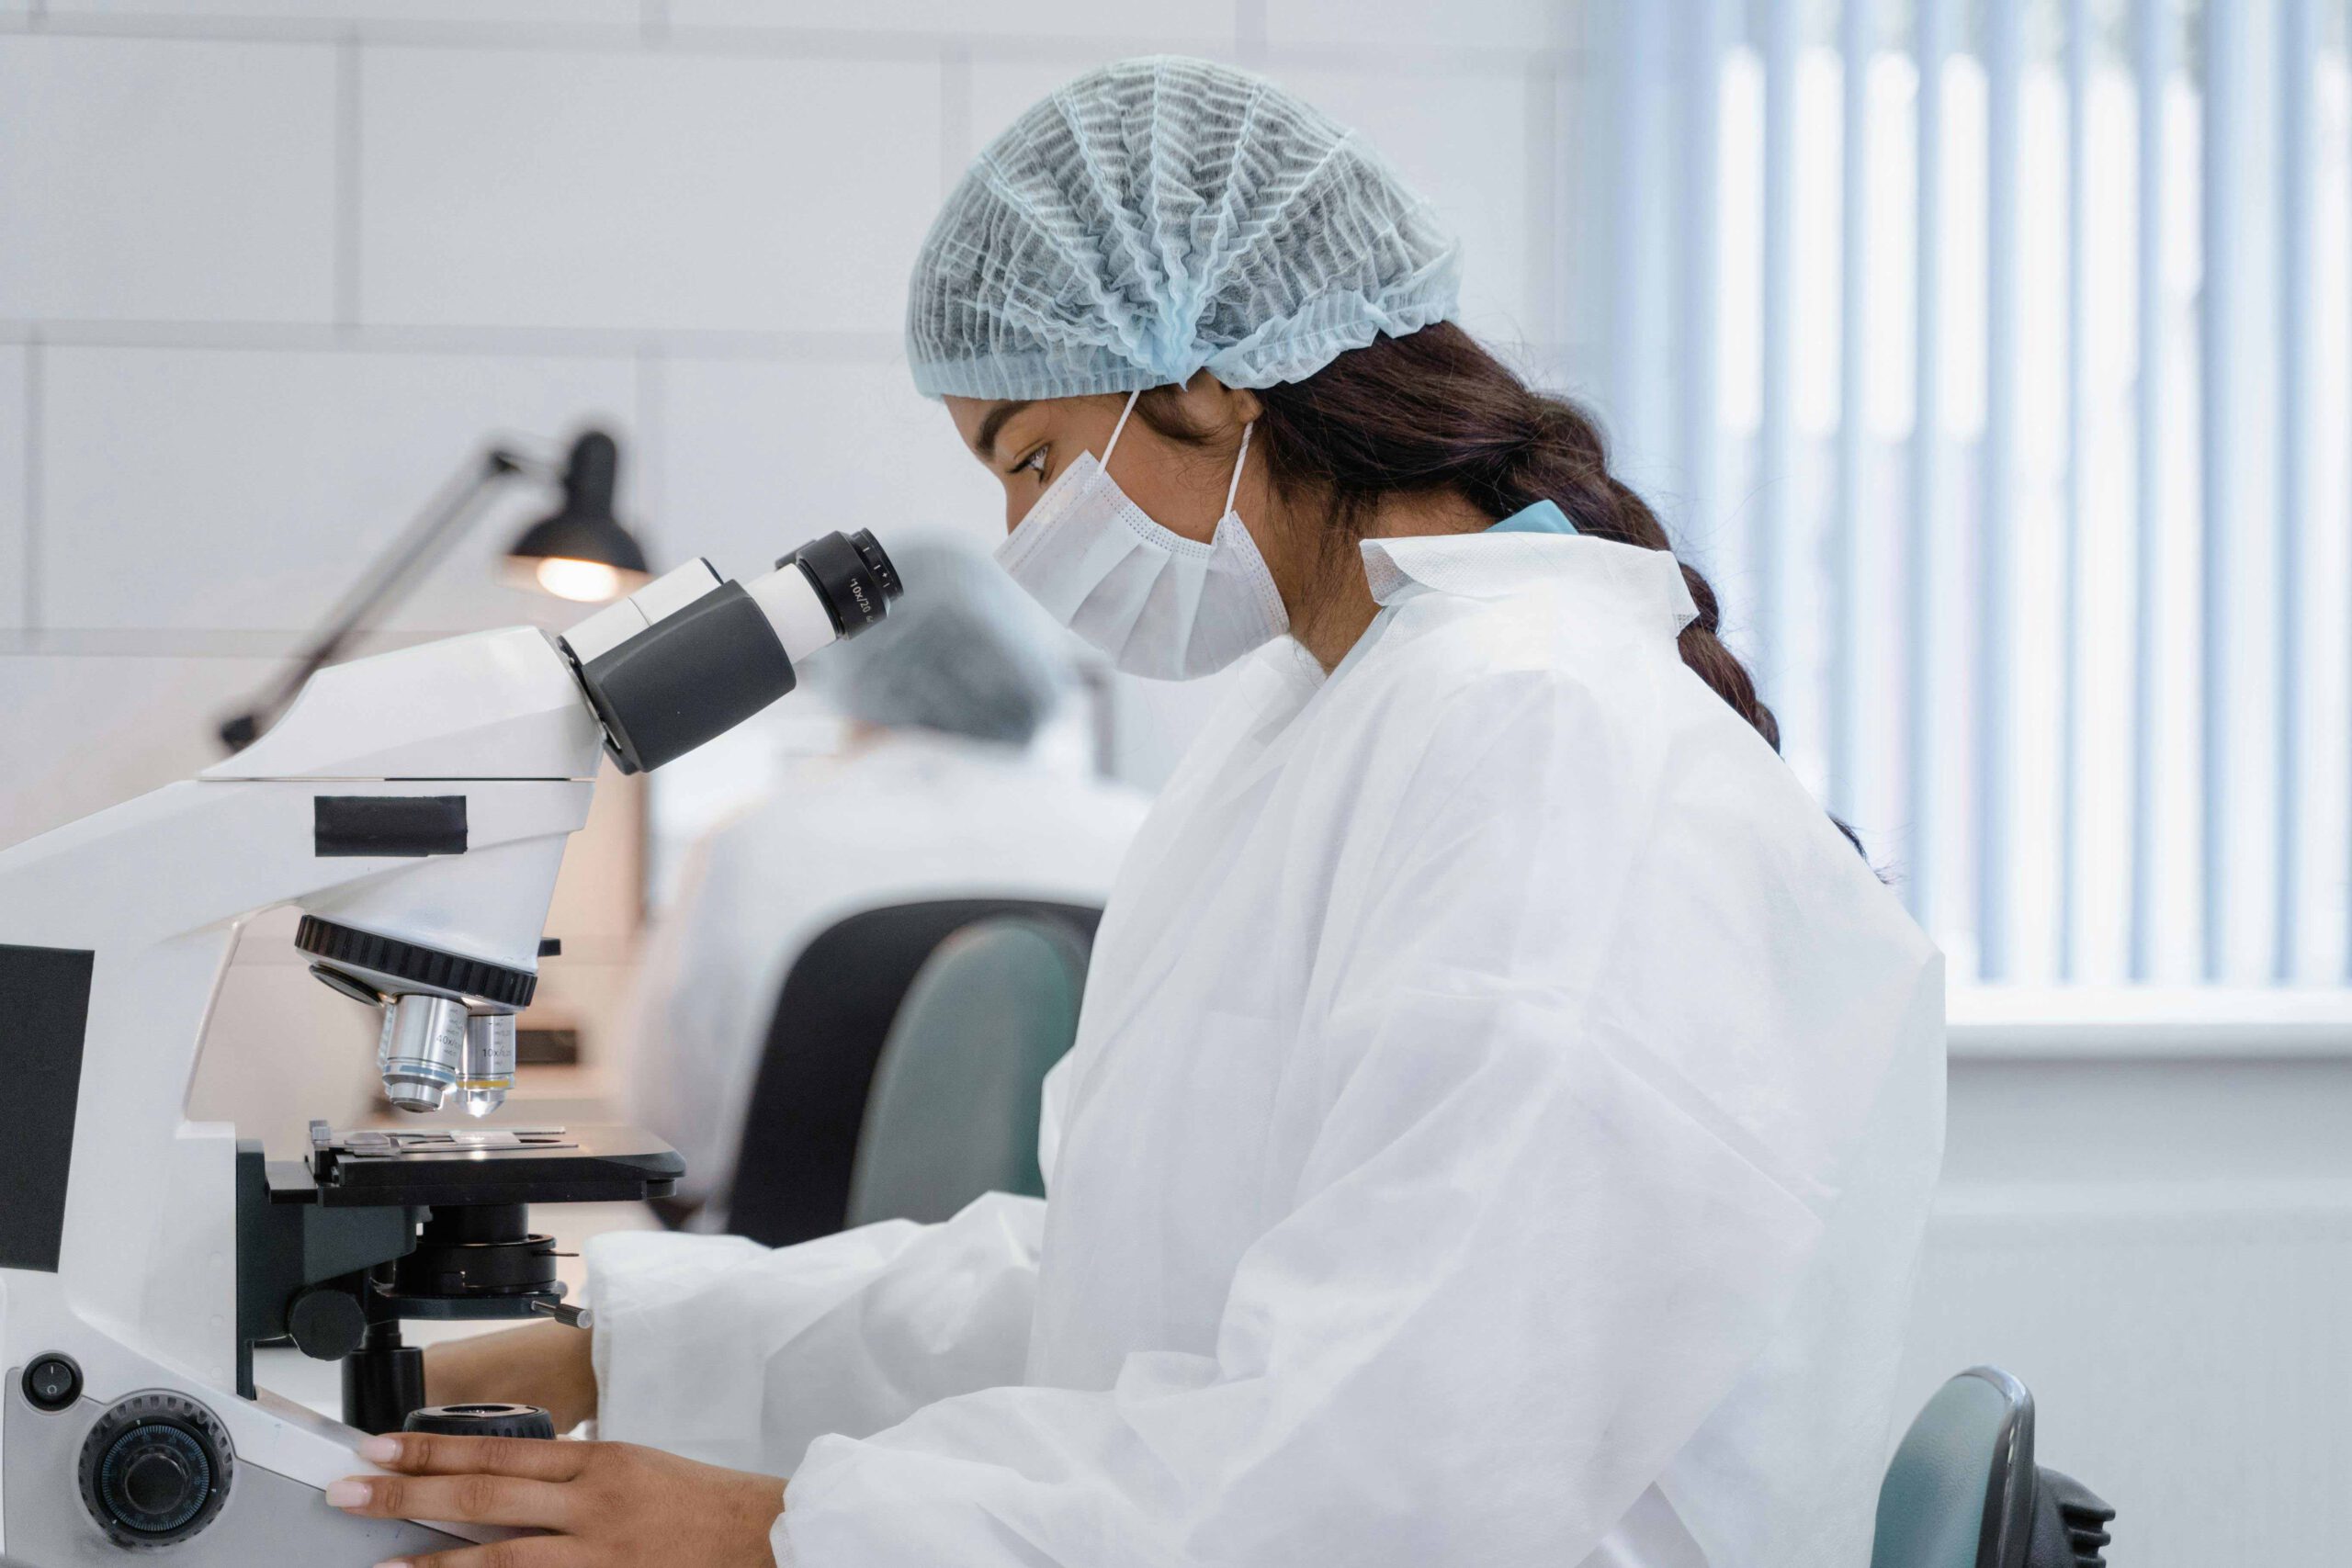 Eine Frau in einem weißen Kittel und einem Haarnetz sitzt vor einem Mikroskop und untersucht eine Probe.